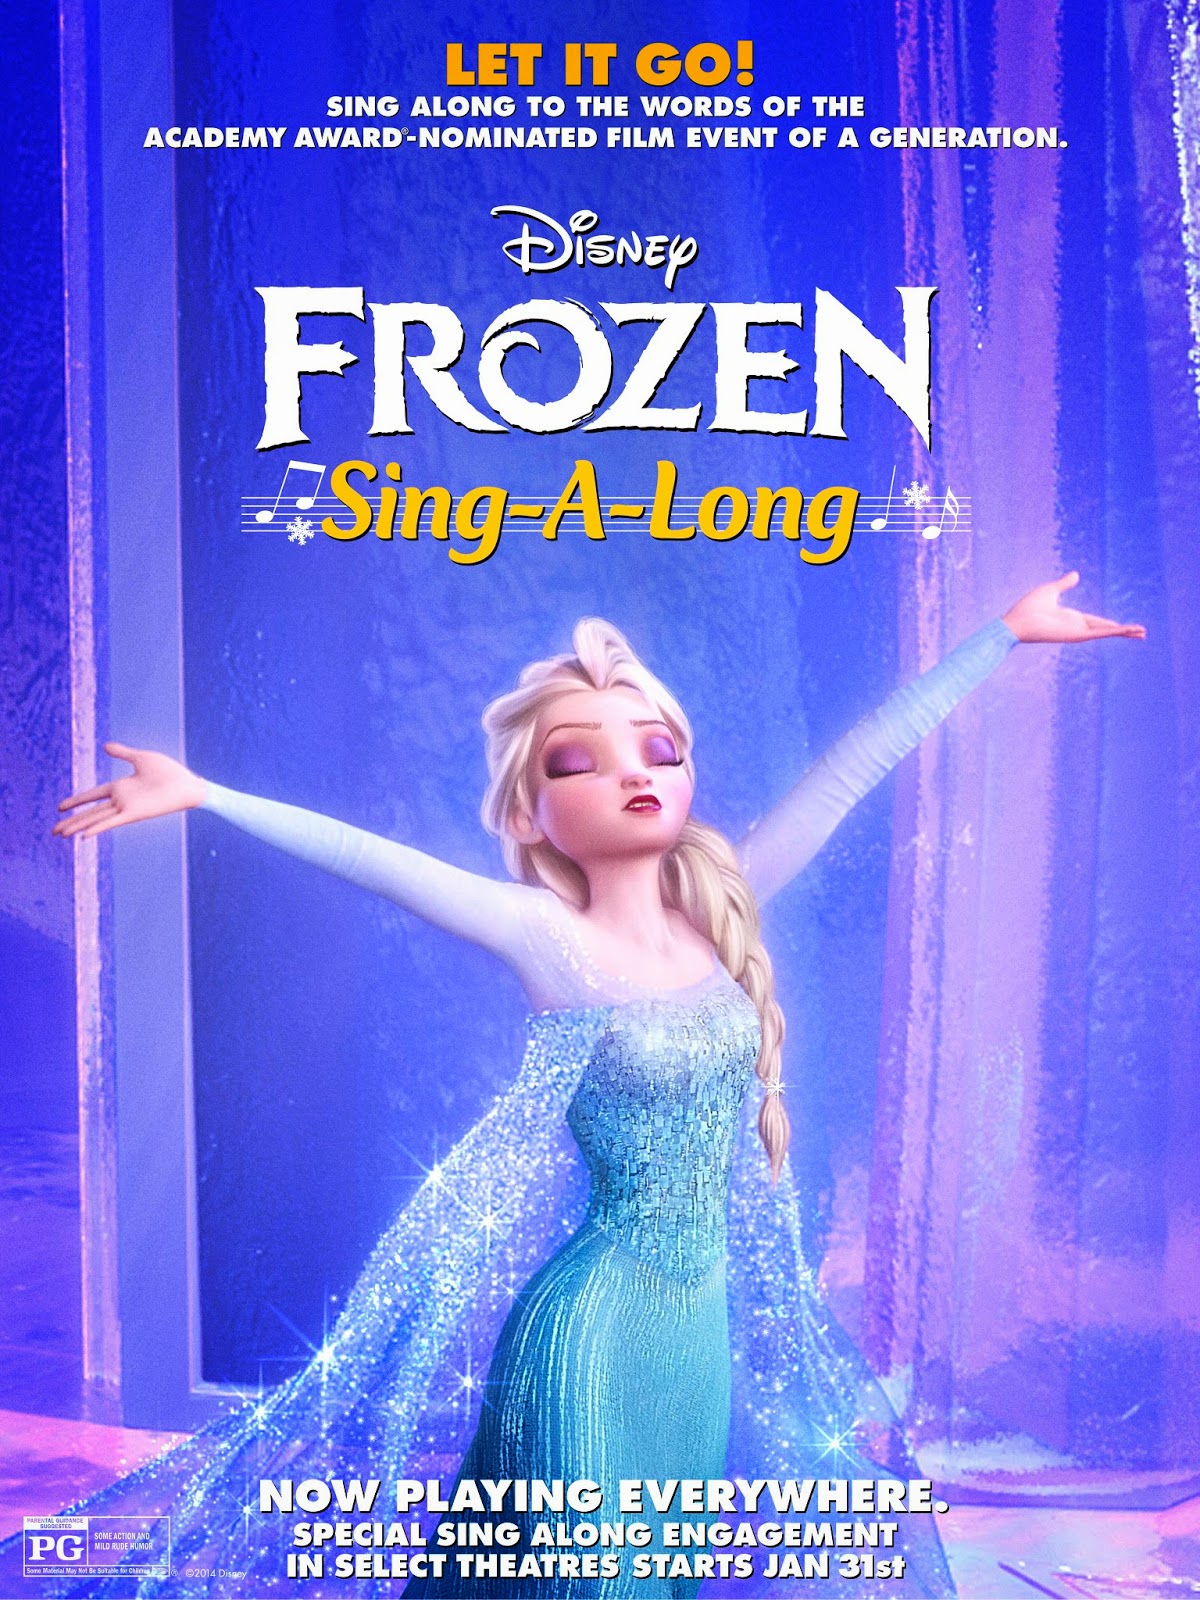 Disney's #Frozen - "Let It Go" Sing-Along Video 